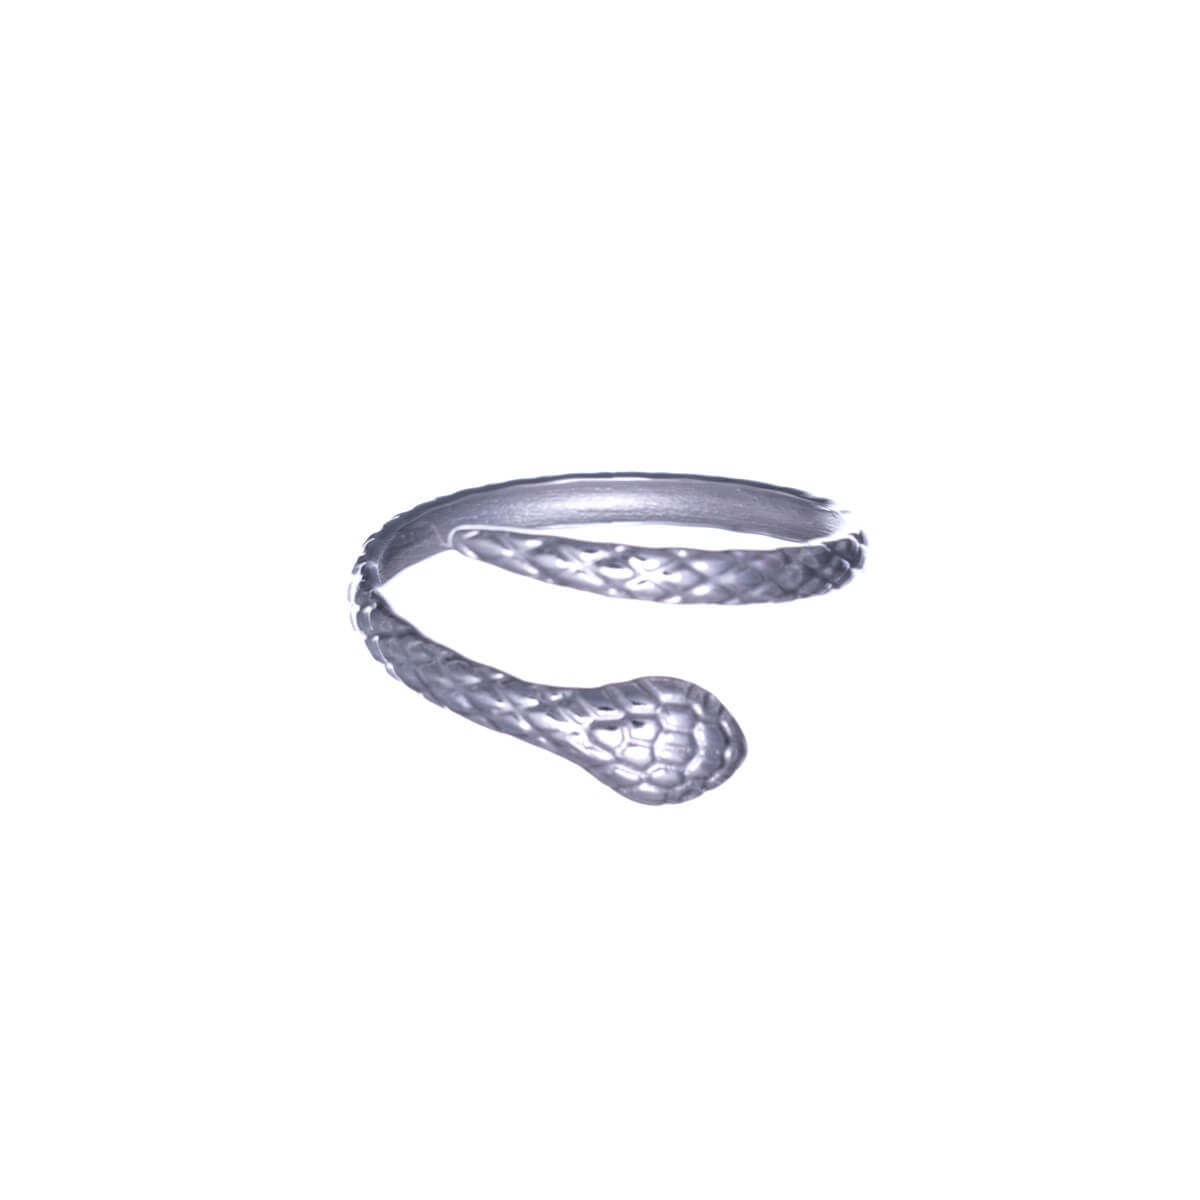 Patterned snake ring (Steel 316L)